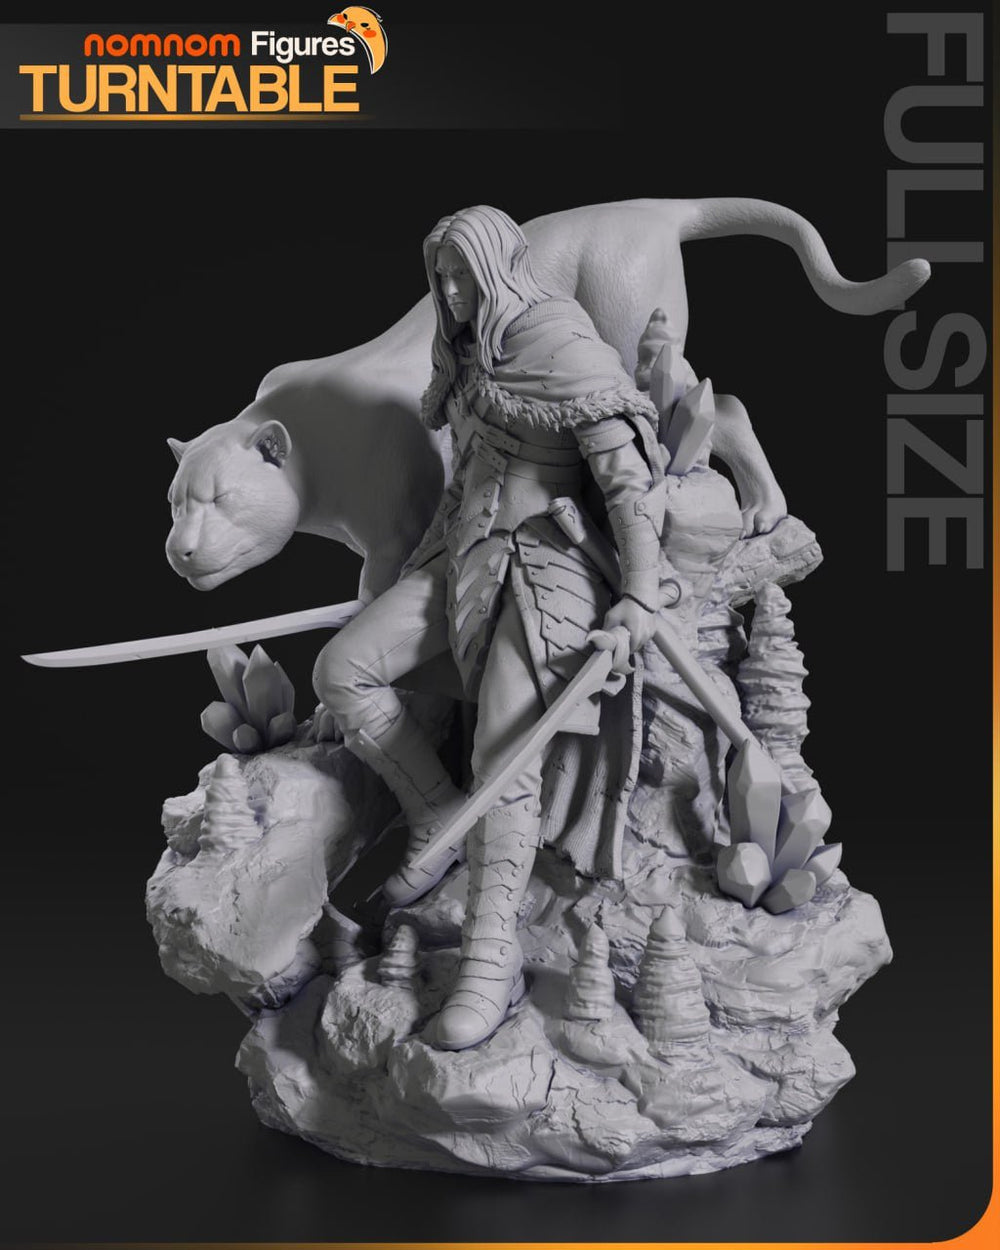 ¡Añade Nobleza y Fuerza con la Figura de Drizzt Do'Urden de Baldur's Gate! - tu tienda de impresión 3D